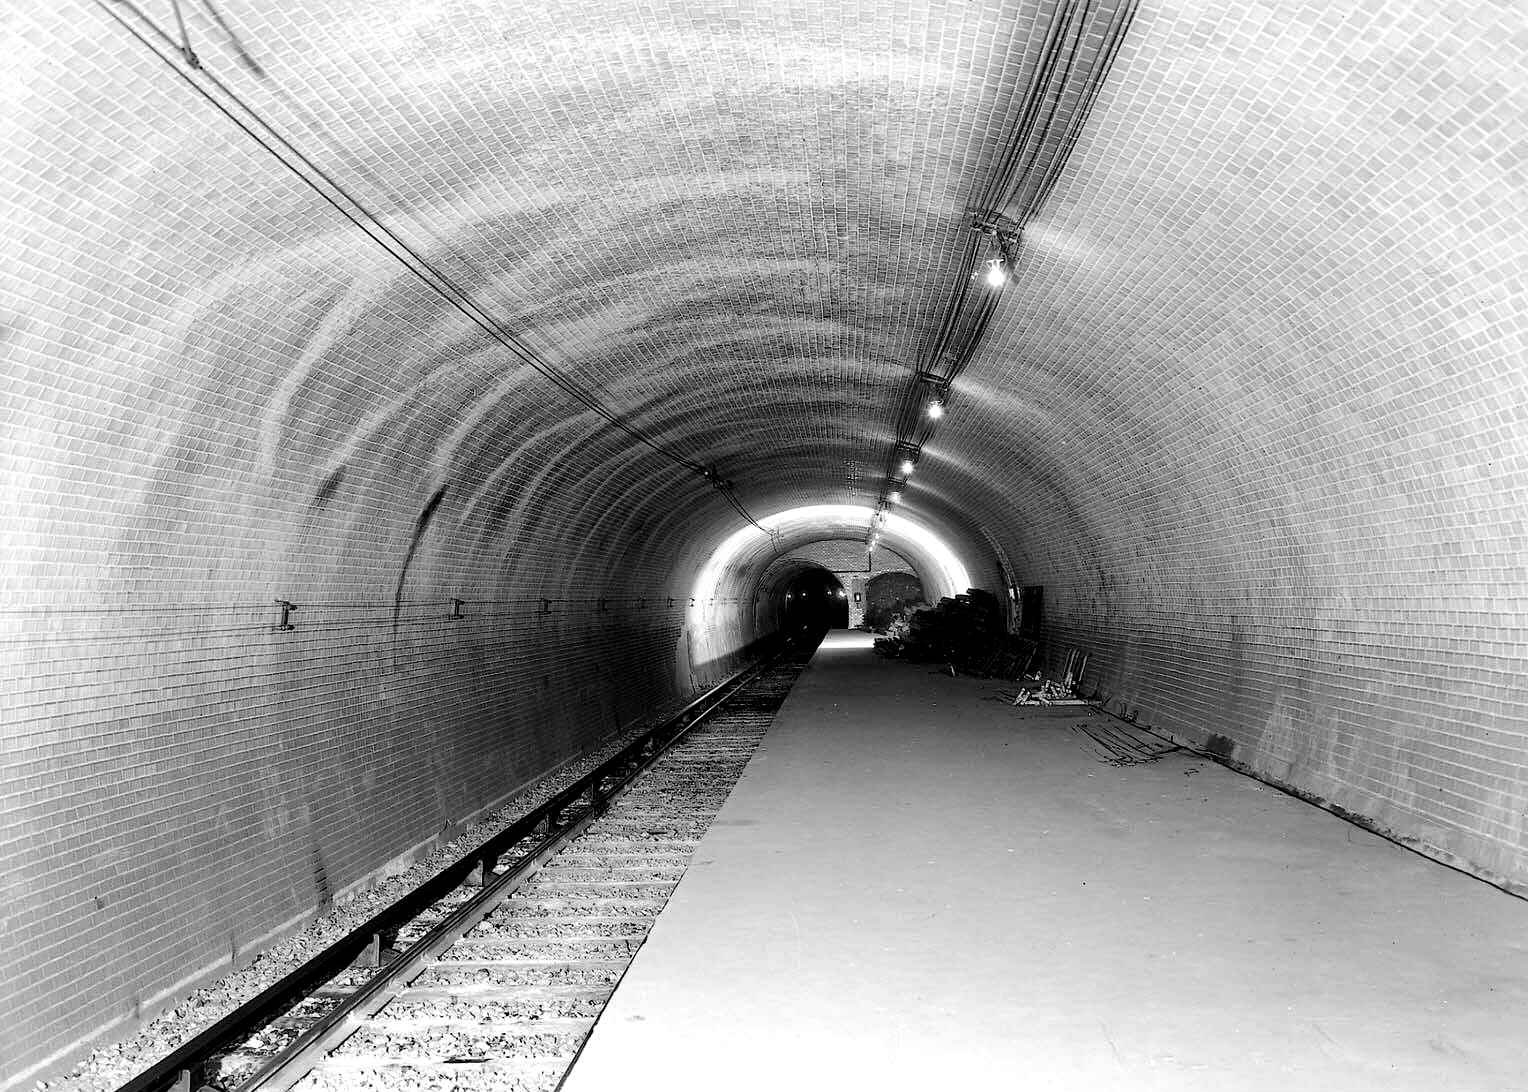 Staţia de metrou Haxo, construită în 1910, nici aici nu a călcat picior de călător. La fel, nu permite acces din exterior. Nu dispune decât de o singură linie. Courtesy of RATP.